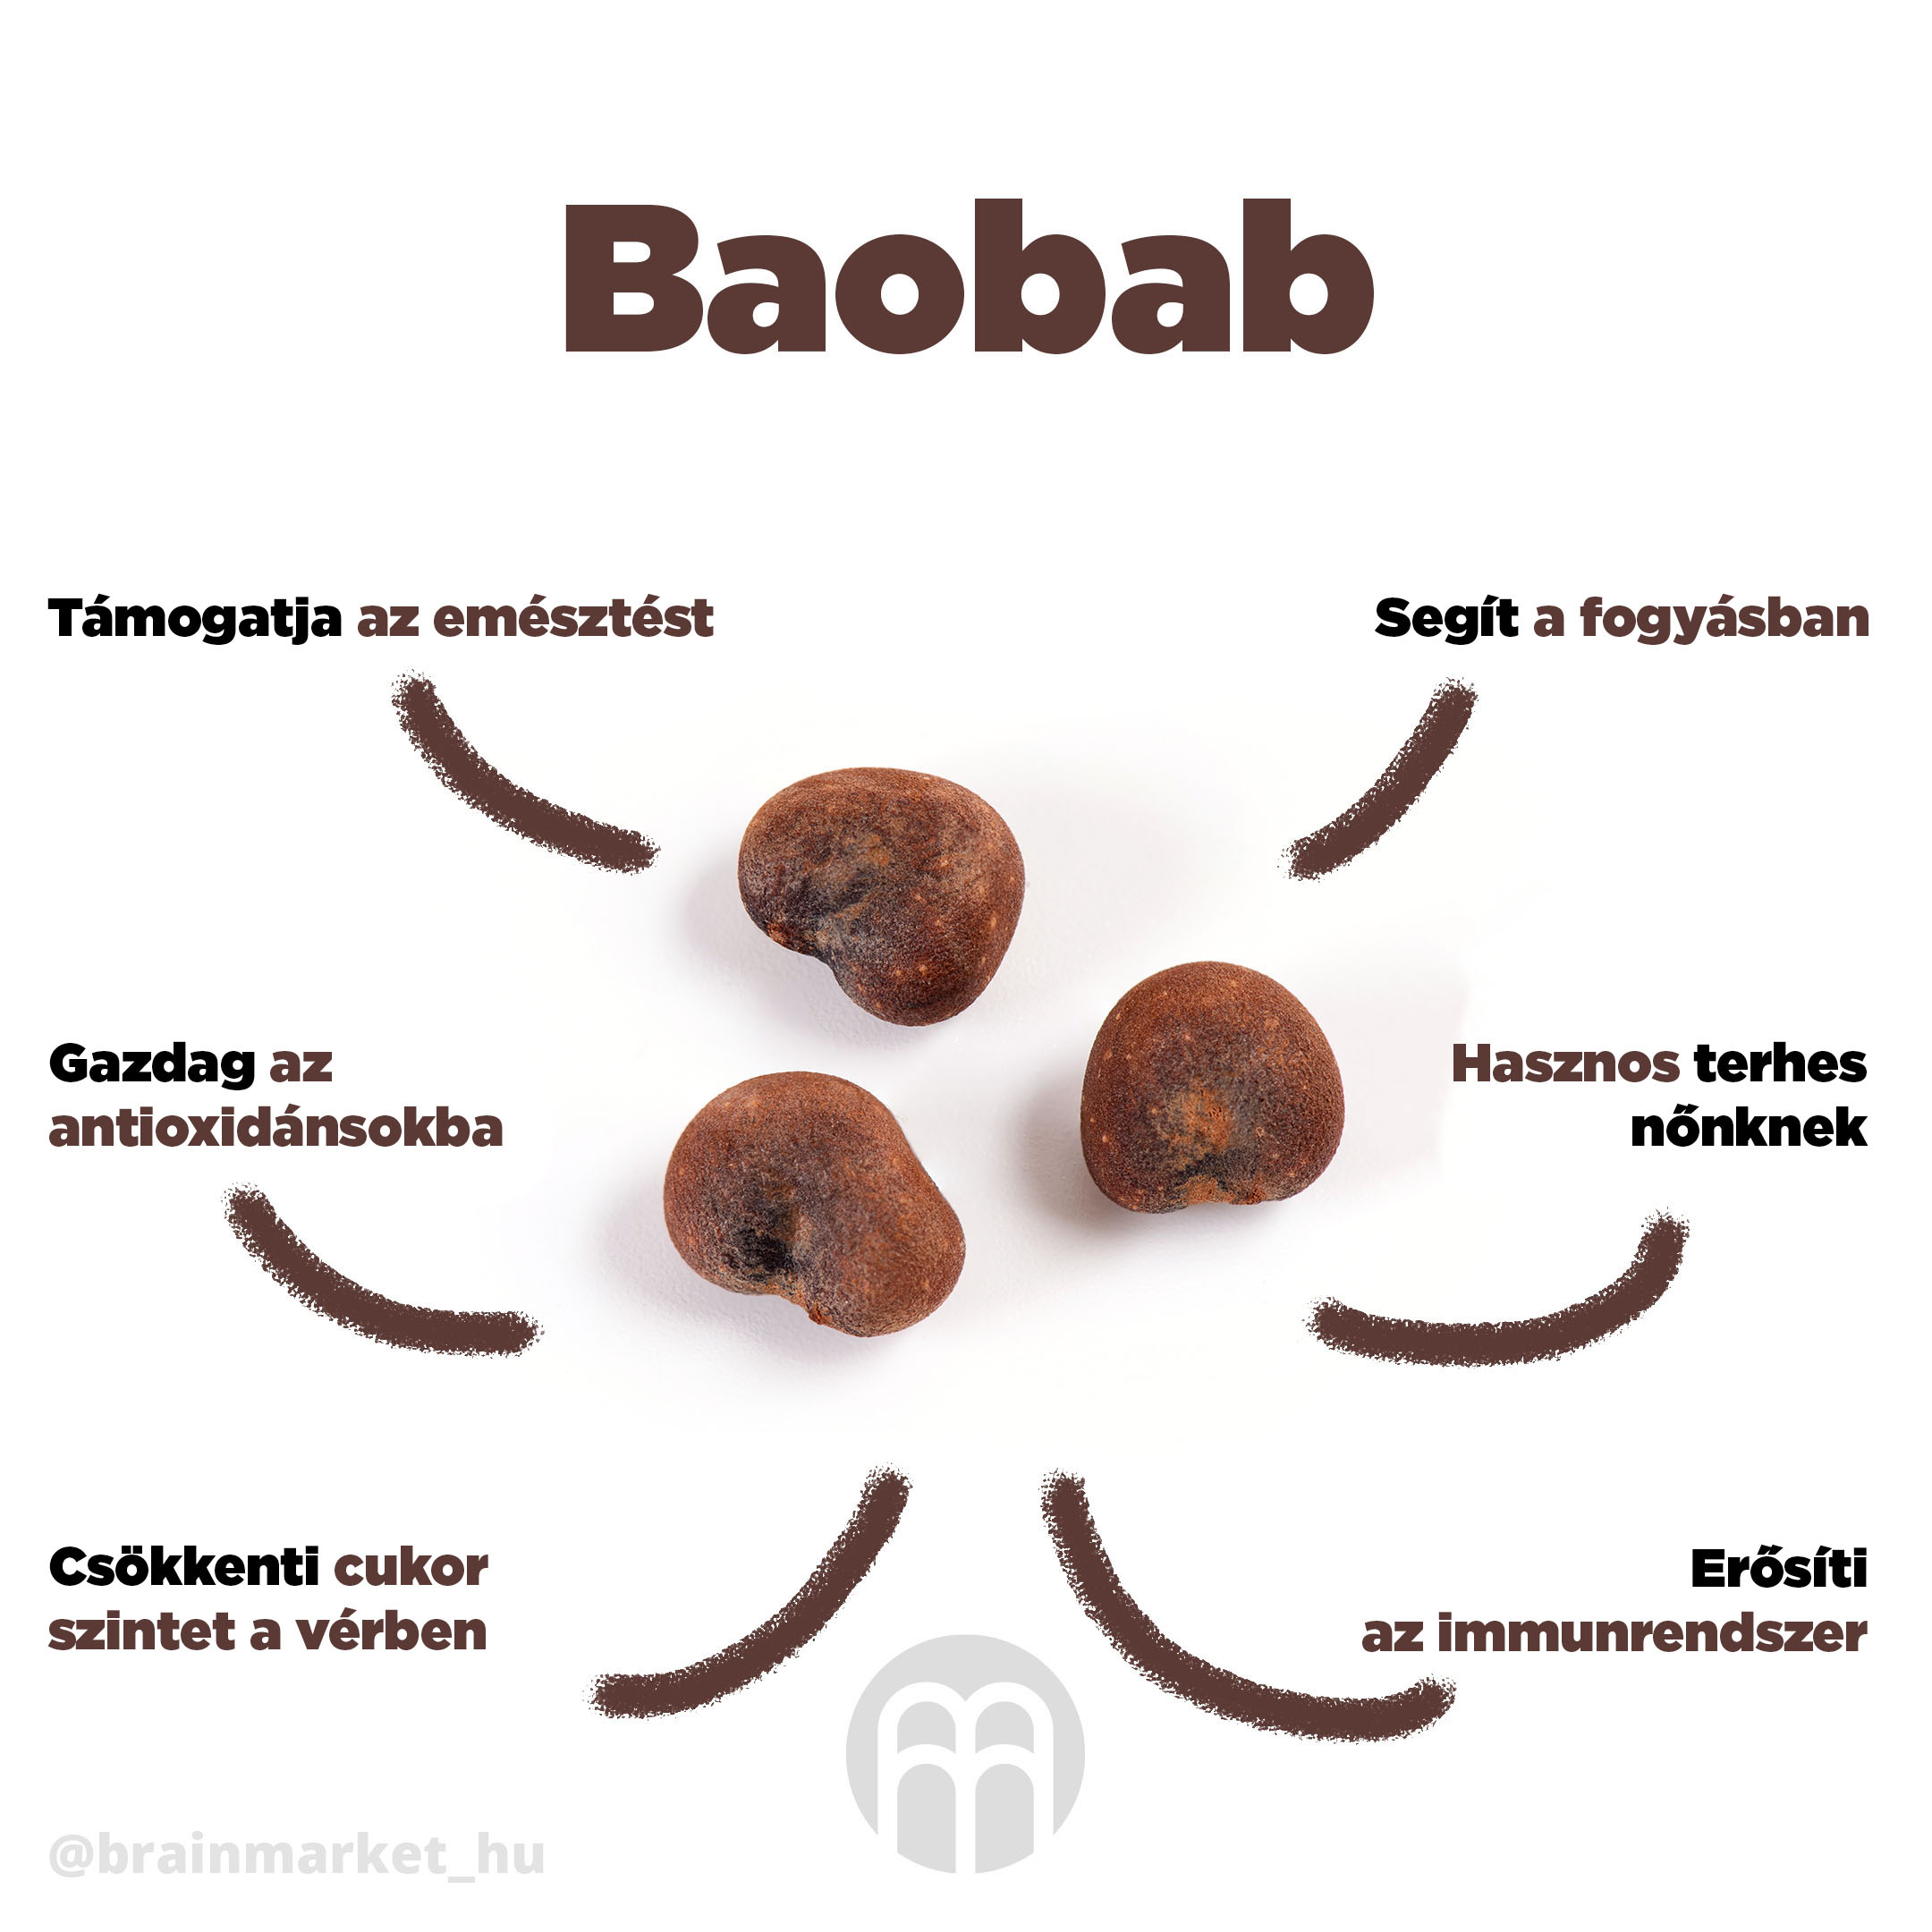 baobab_infografika_brainmarket_CZ